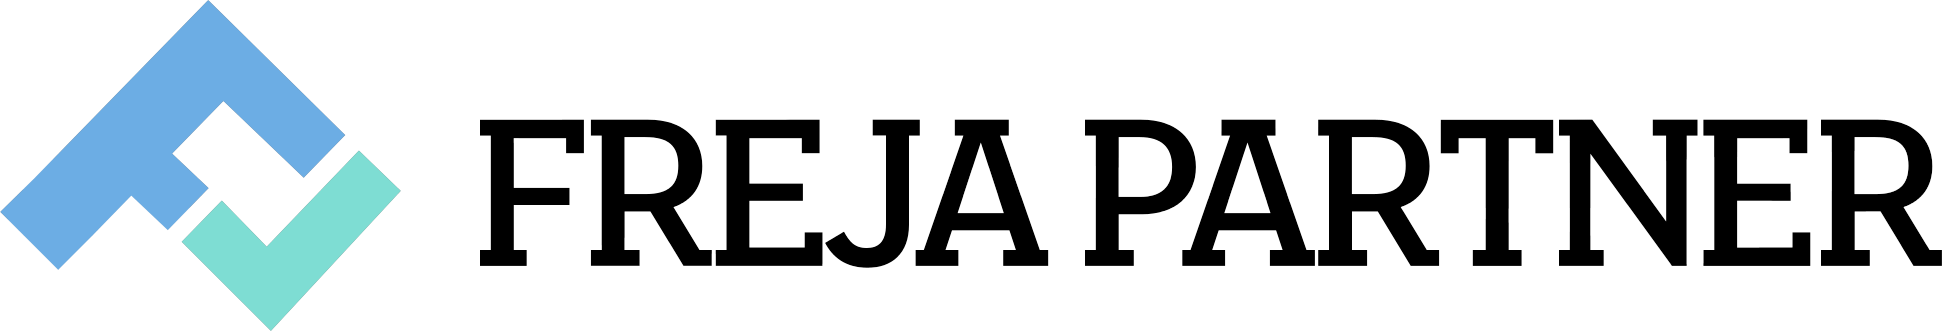 Freja Partner logo